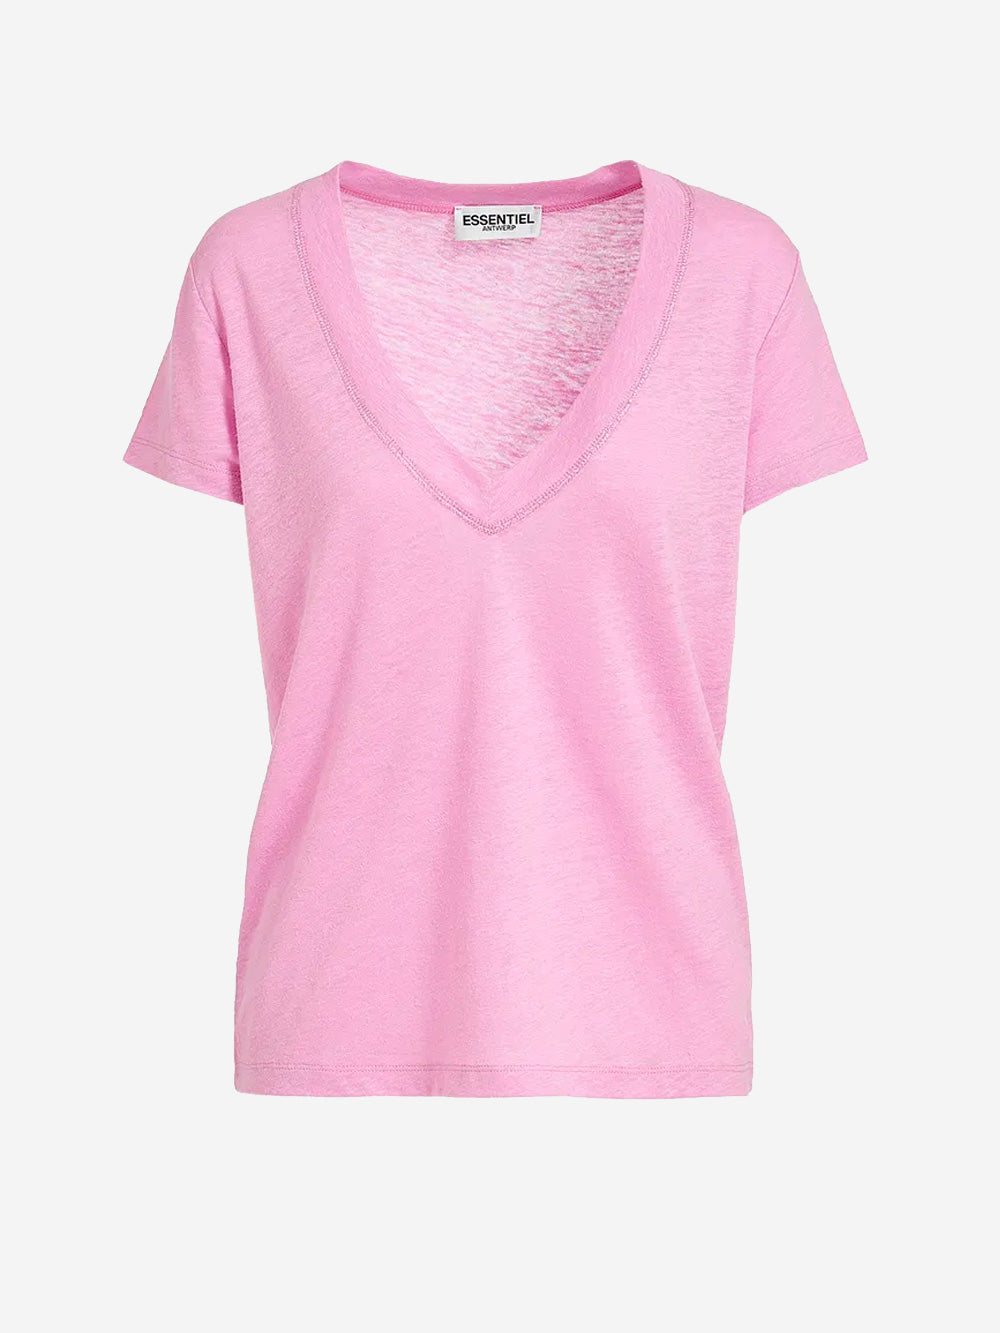 ESSENTIEL ANTWERP T-shirt in lino Rosa Urbanstaroma